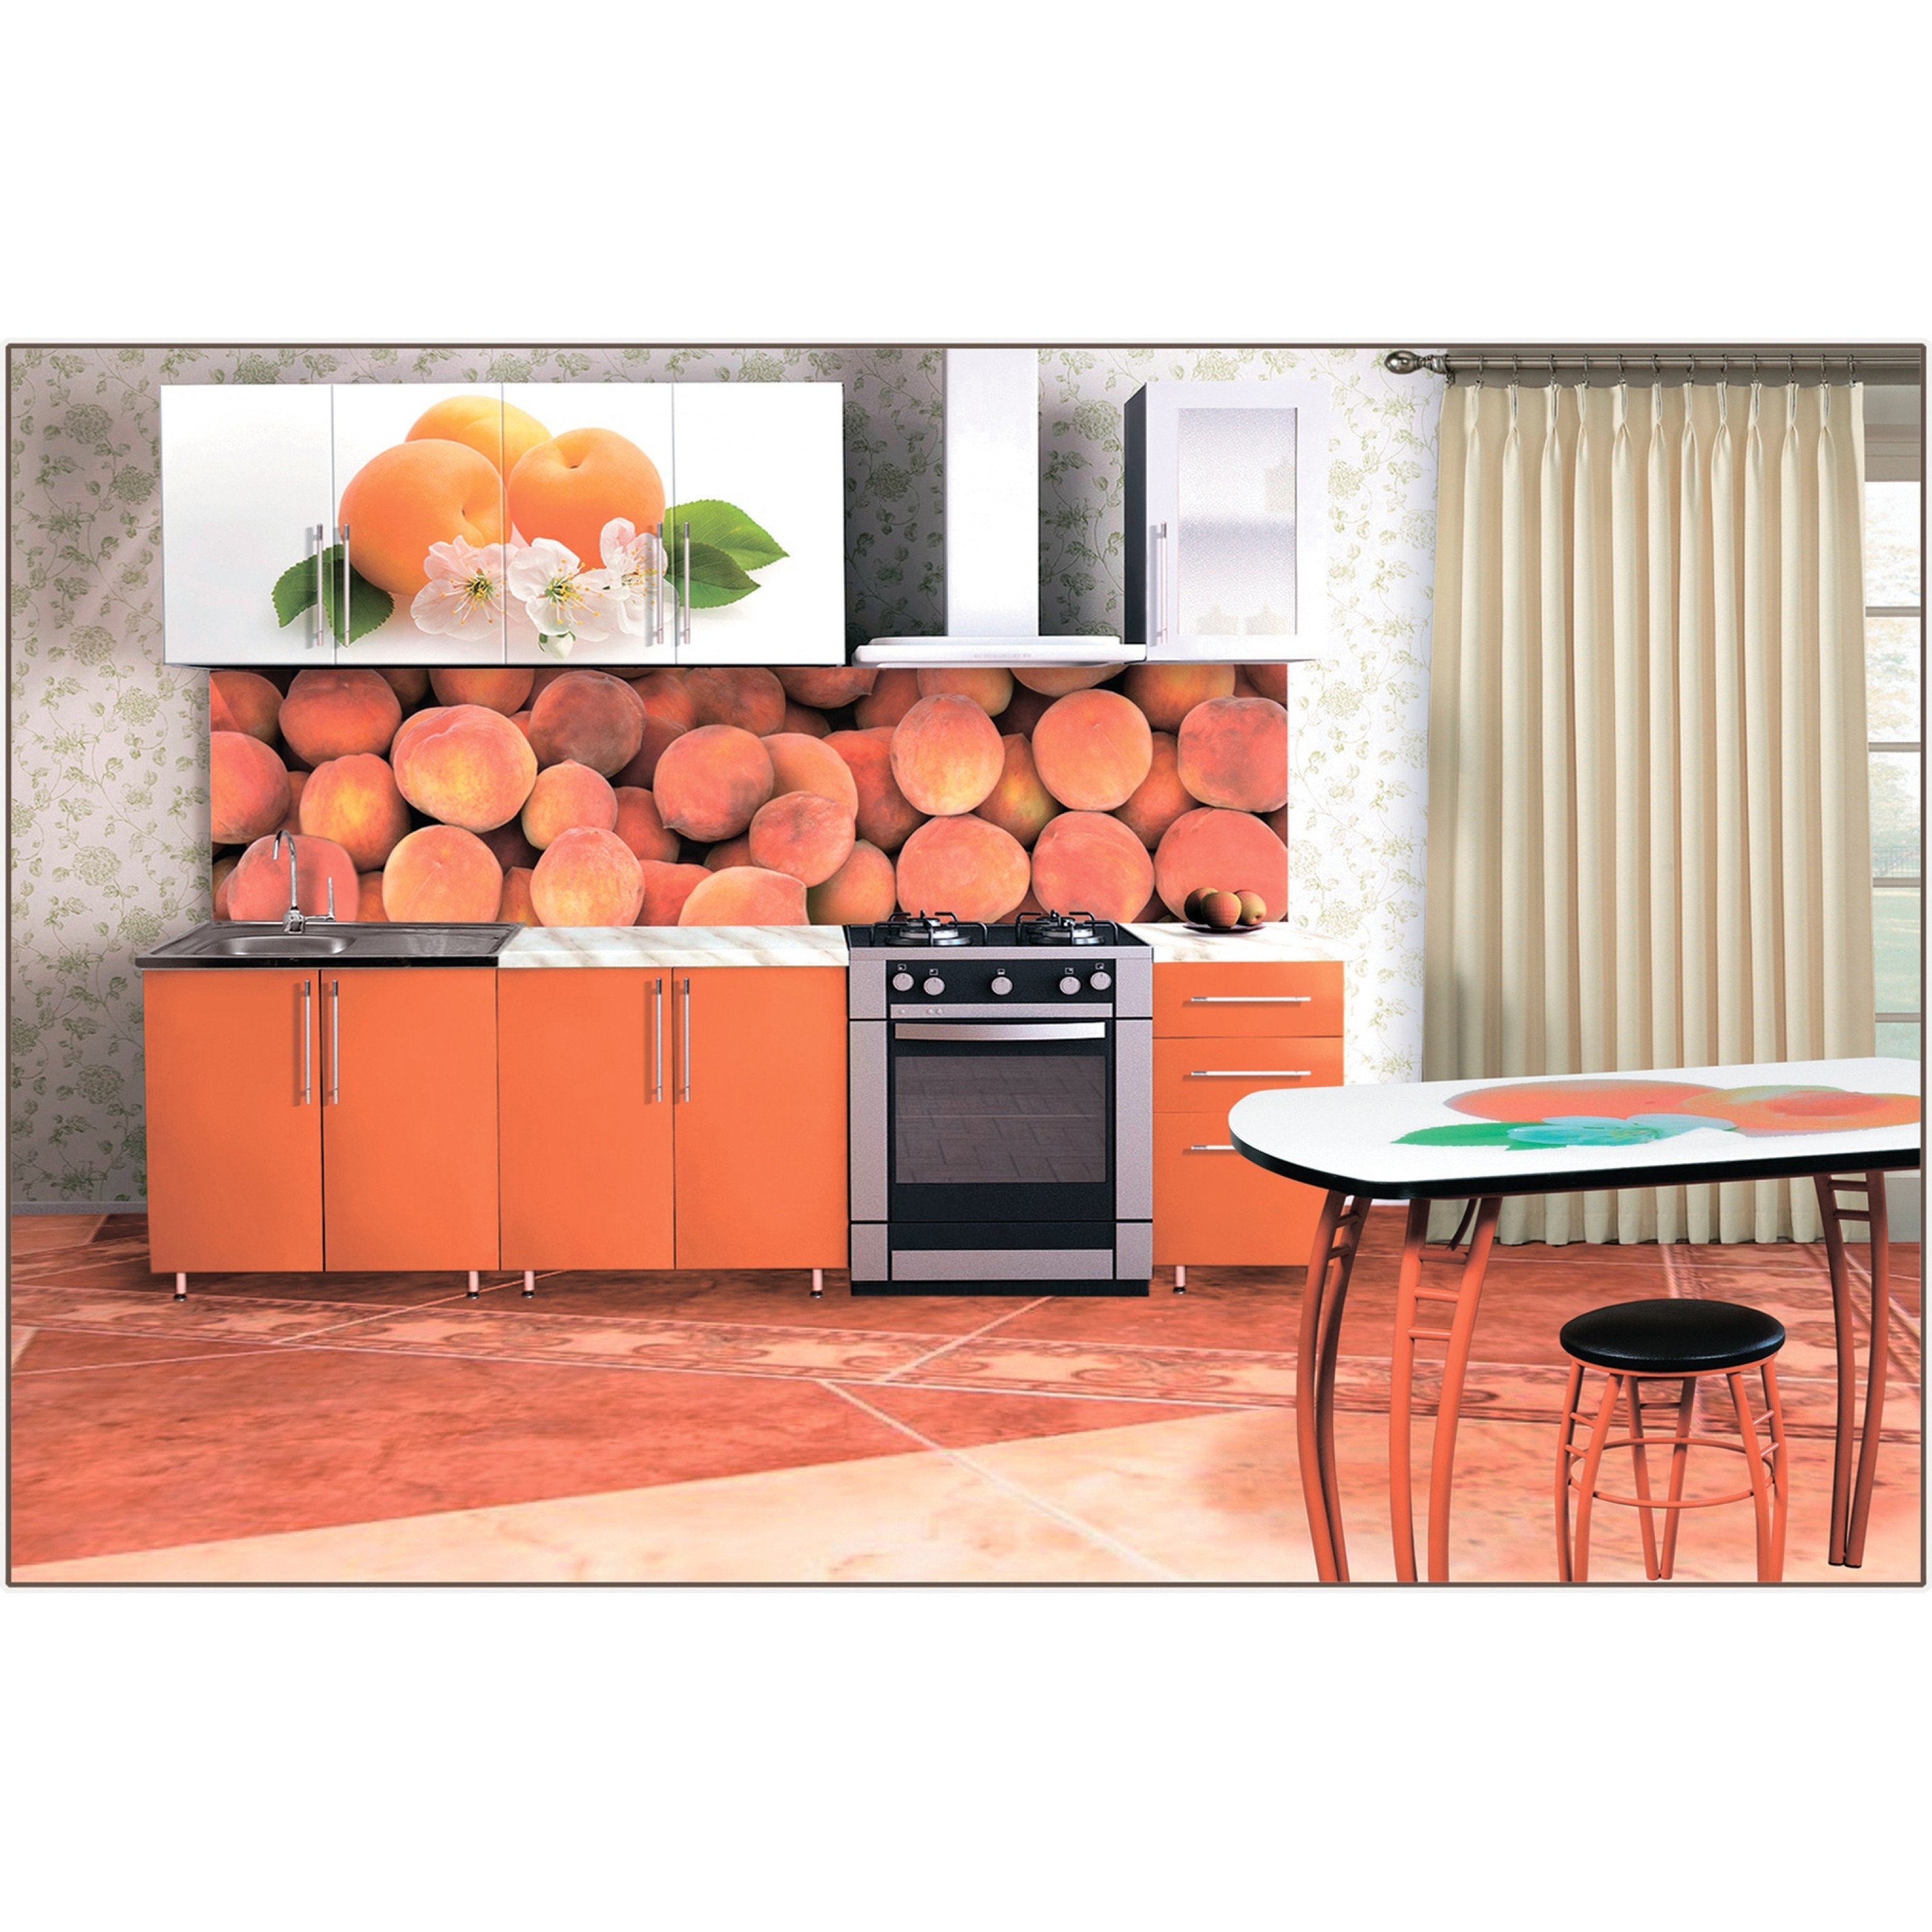 фартук для кухни персикового цвета